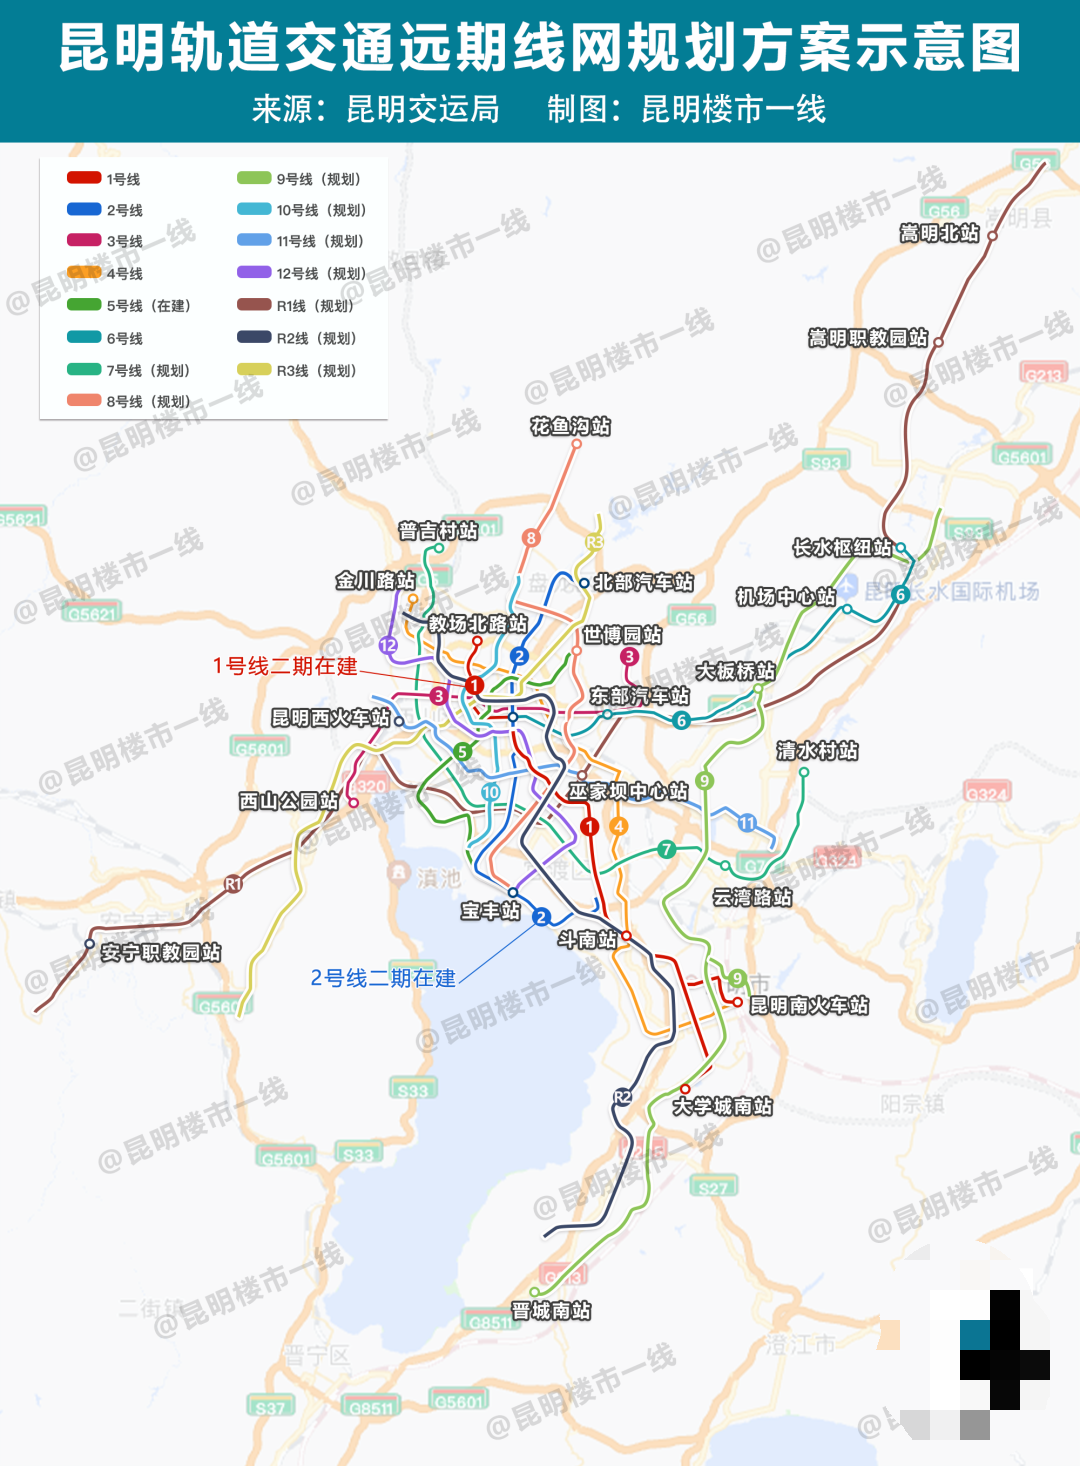 打造云南最美地铁线路 我在昆明地铁4号线等你